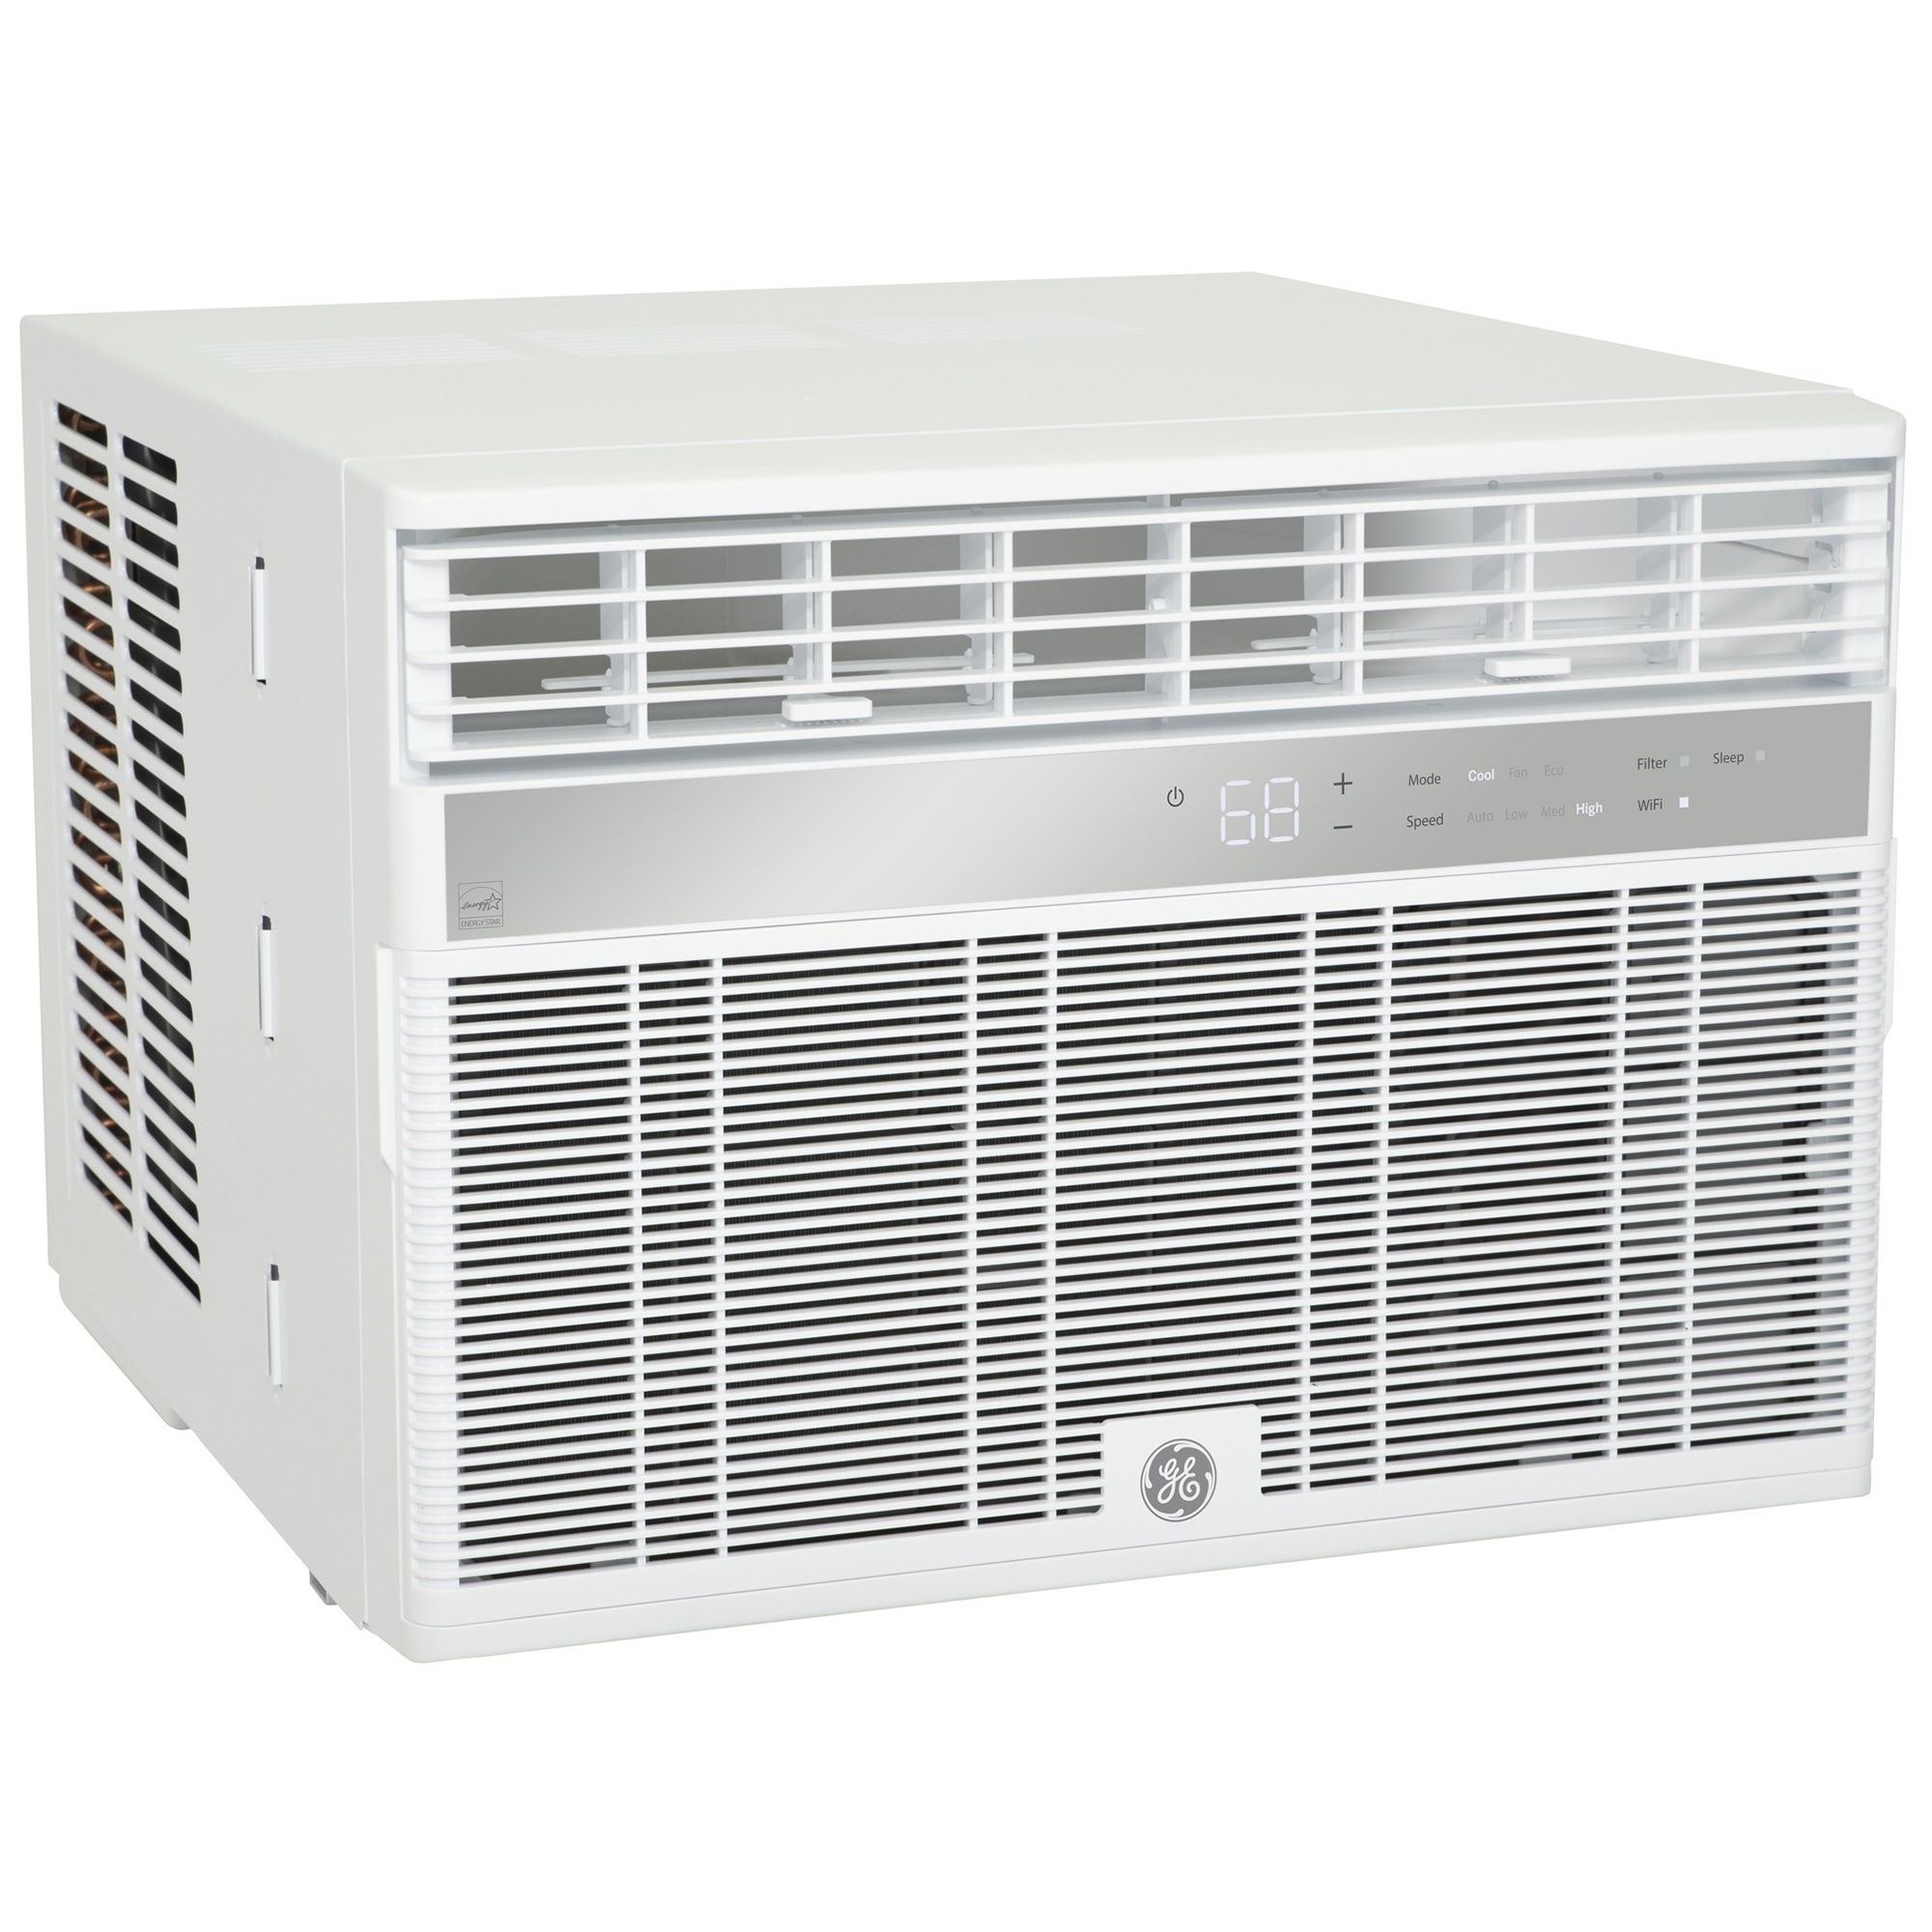 GE 10,000 BTU Window Air Conditioner (AHY10LZ)